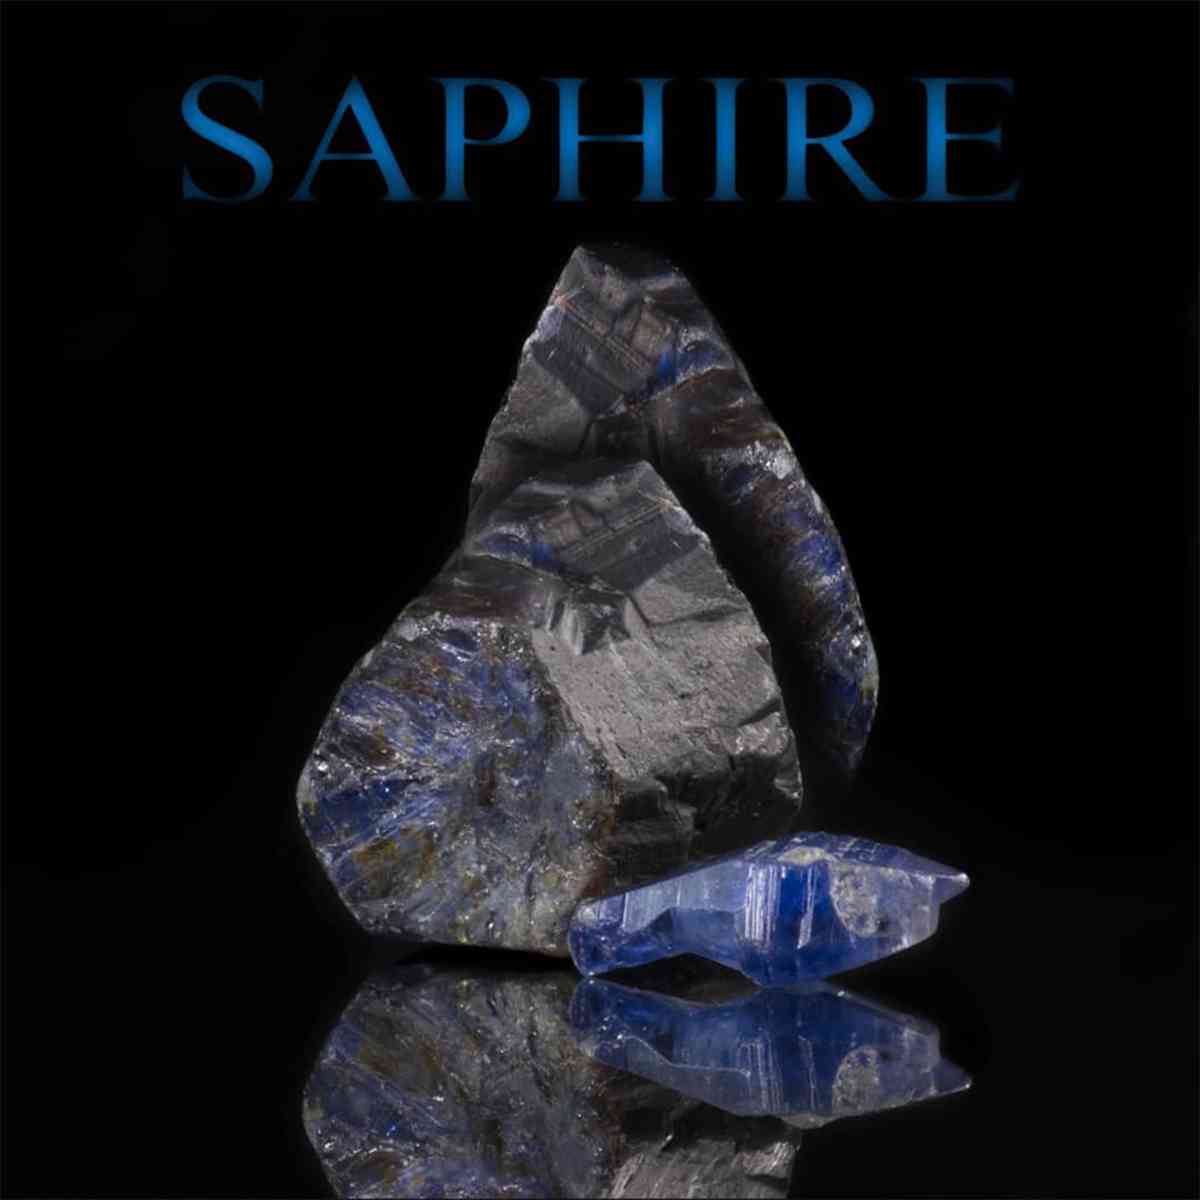 Blauer Saphirkristall und Roh Edelstein mit Überschrift "SAPHIRE"